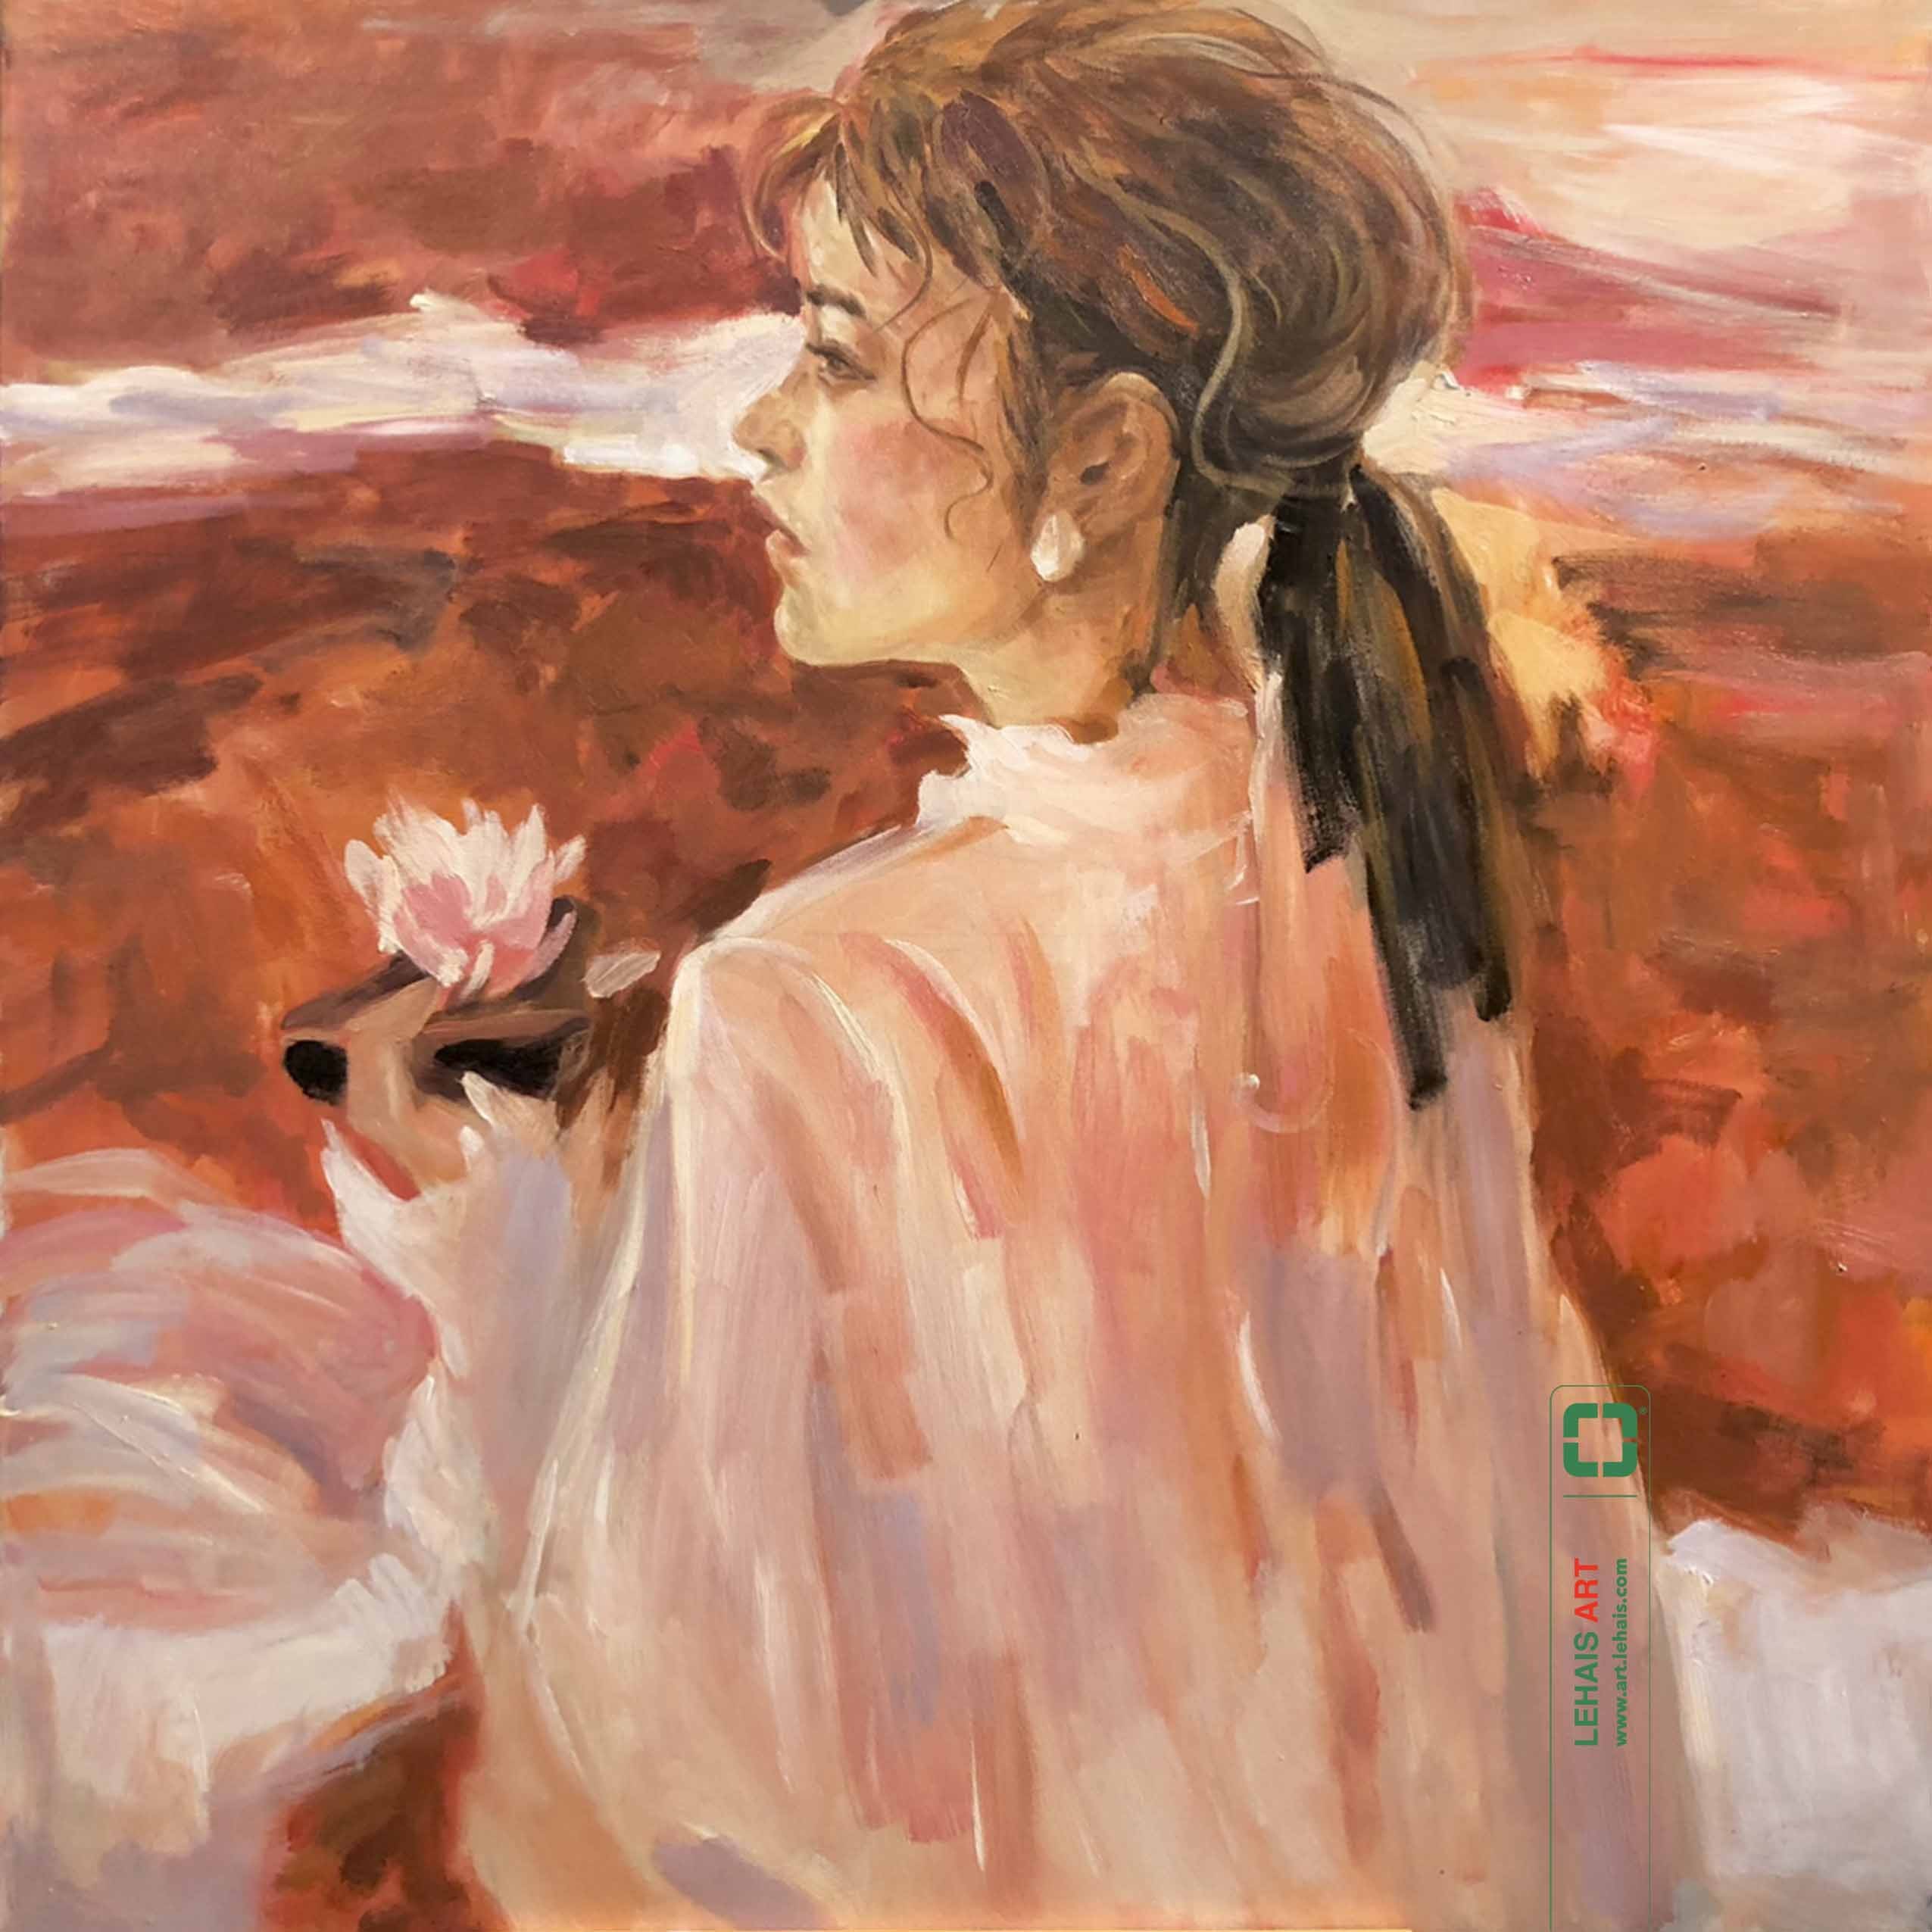 Tranh sơn dầu thiếu nữ vẽ theo phong cách hiện đại - TSD797LHAR